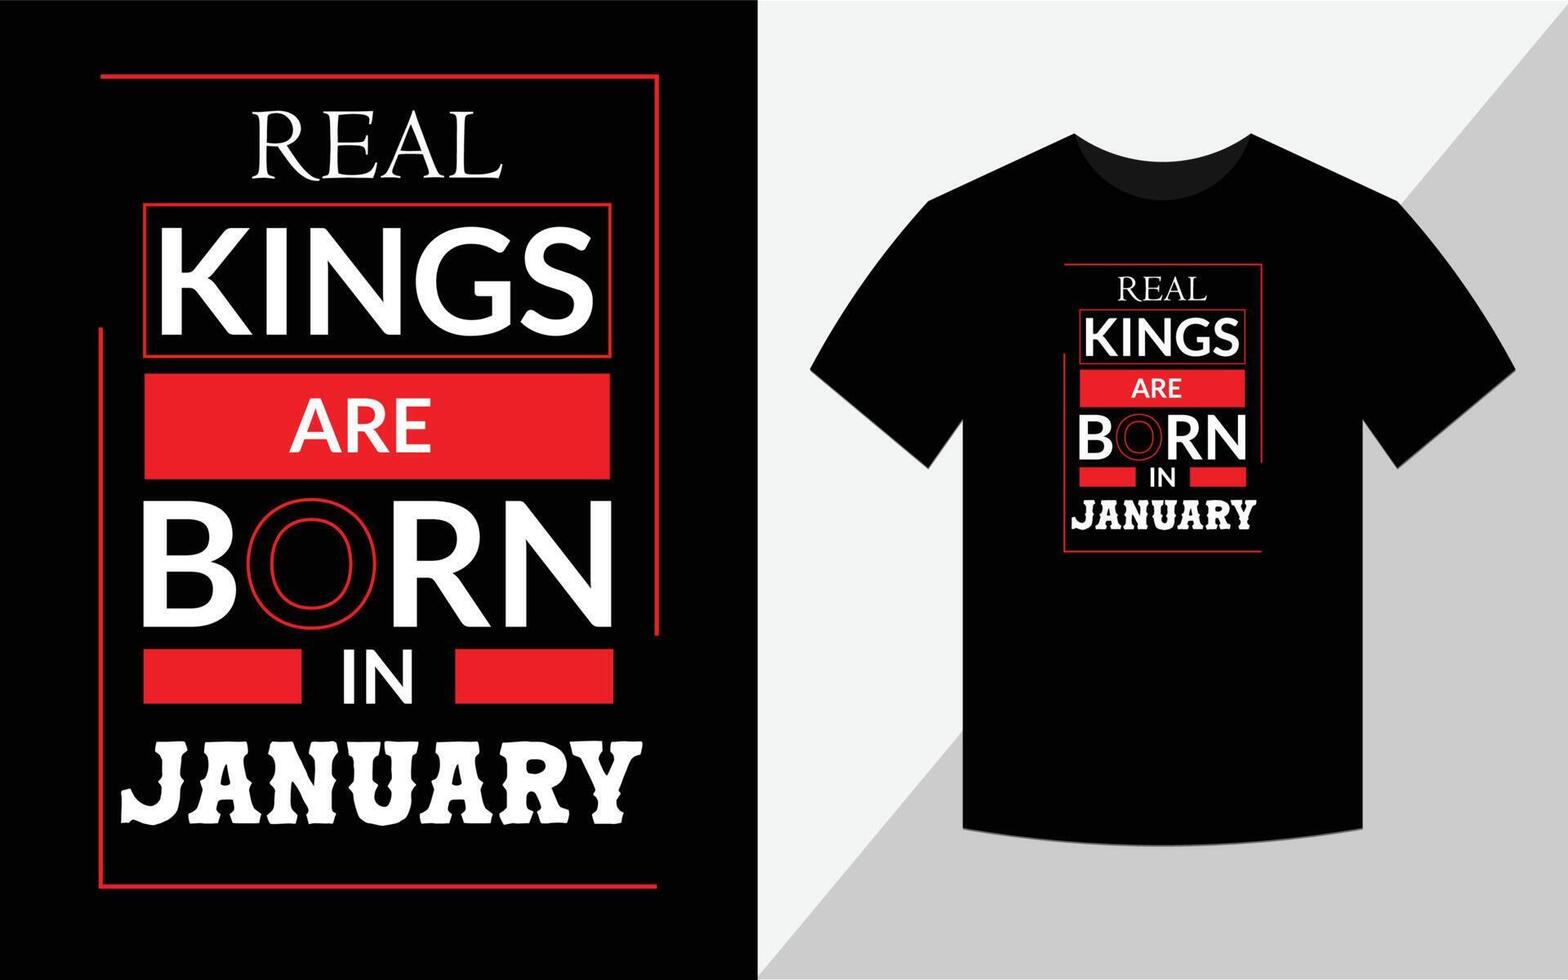 echte koningen worden geboren in januari, t-shirtontwerp vector